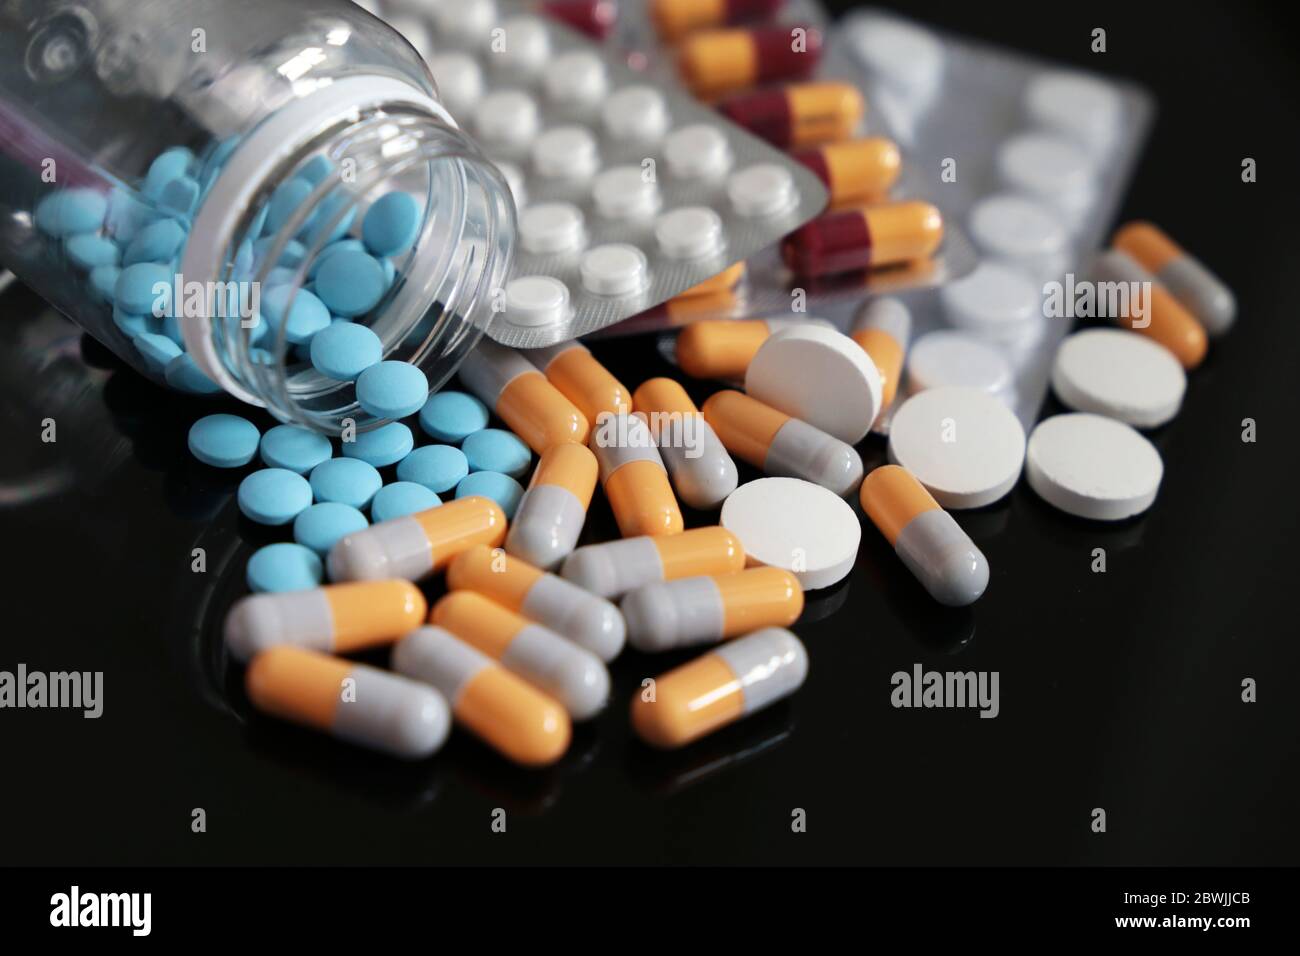 Pilules sur une table en verre foncé, différents médicaments en capsules et comprimés dispersés d'une bouteille. Concept de pharmacie, antibiotiques, vitamines Banque D'Images